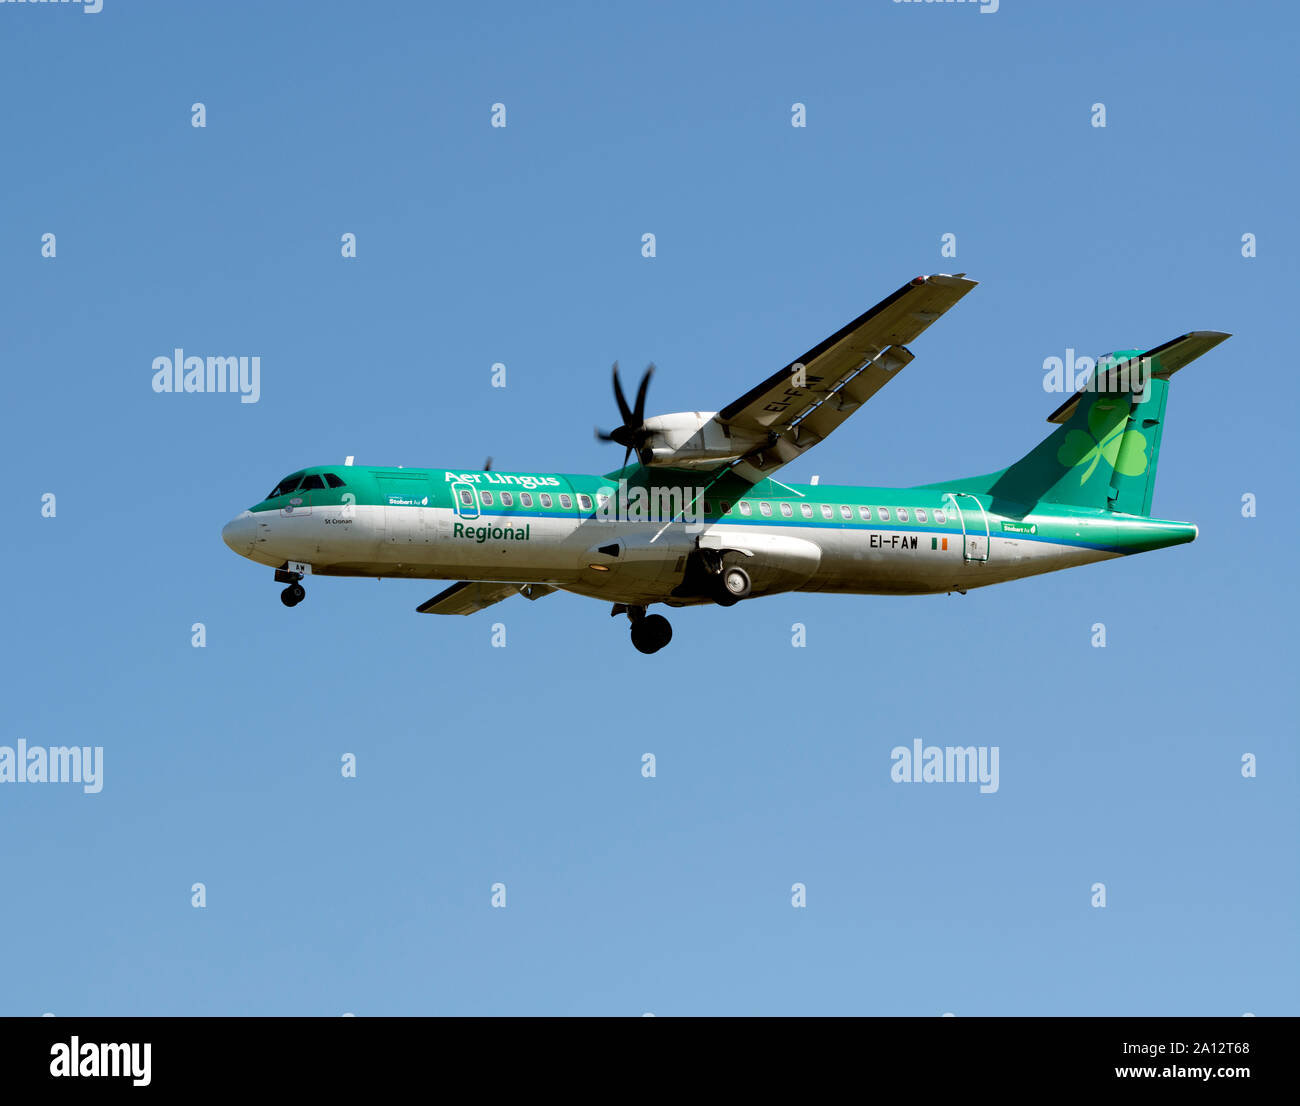 Aer Lingus Regional ATR 72-600 azionato da aria Stobart atterraggio all'Aeroporto di Birmingham, UK (EI-FAW) Foto Stock